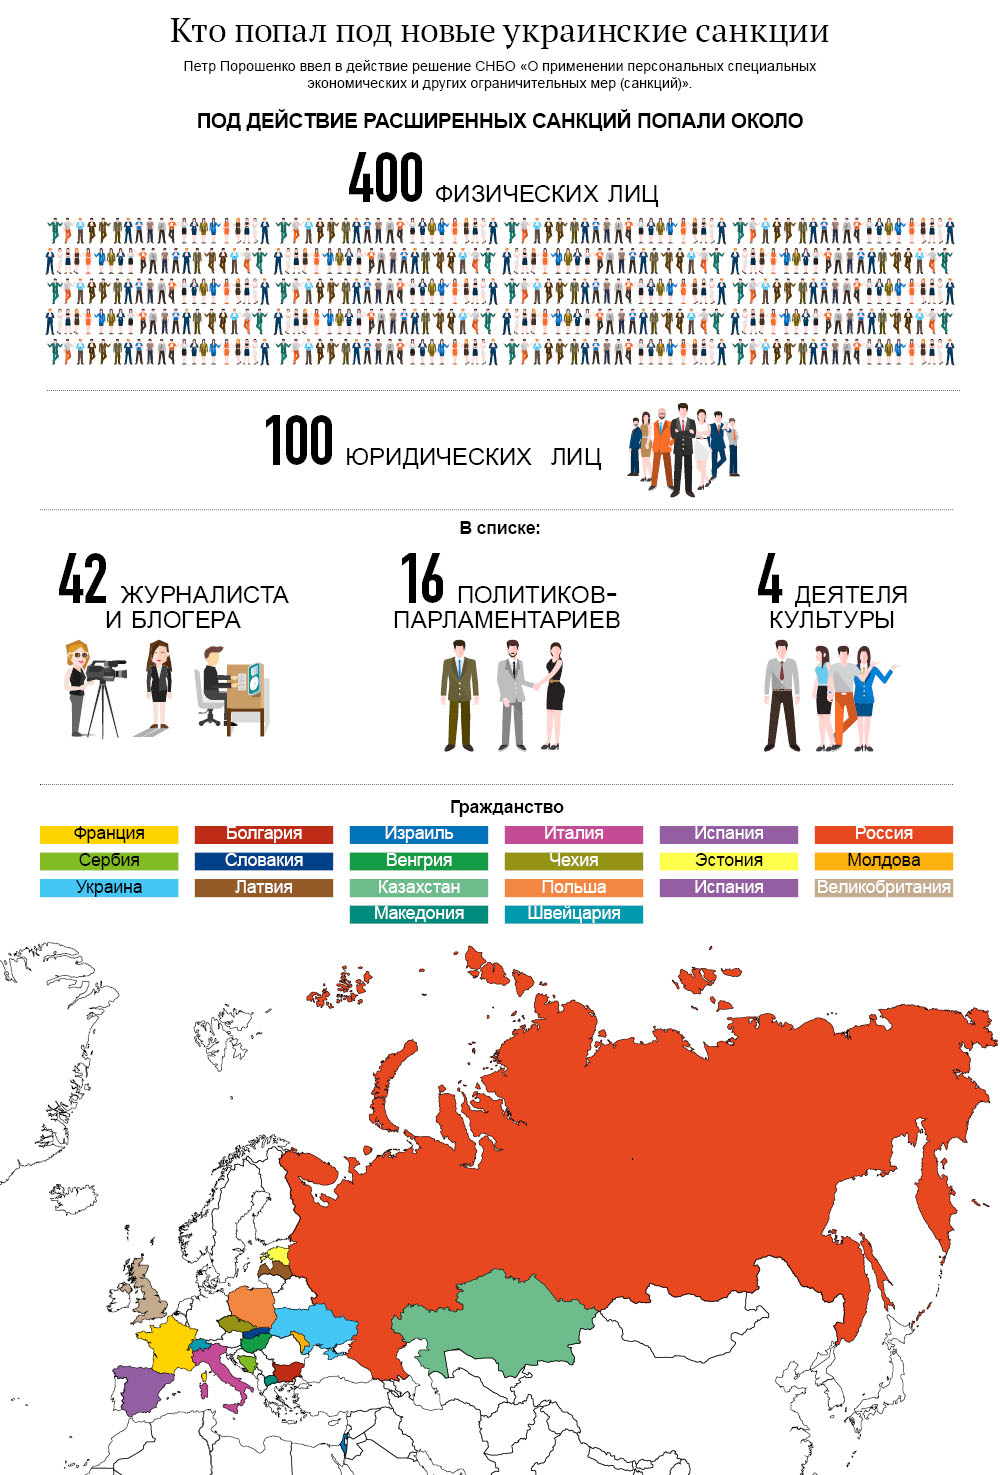 Кто попал под новые санкции Украины. Инфографика